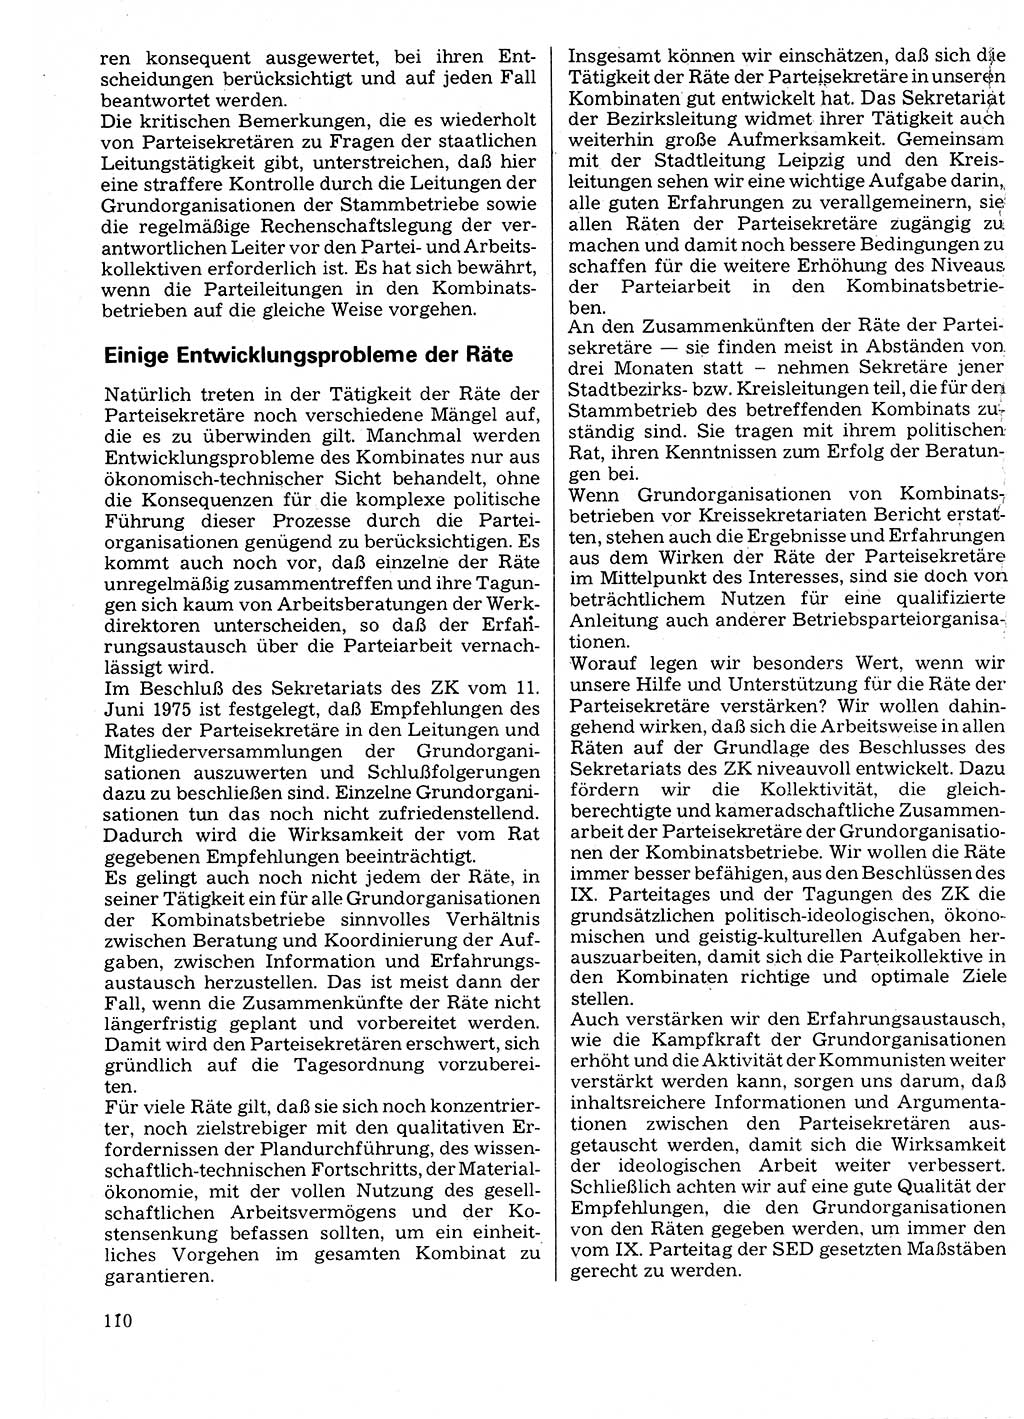 Neuer Weg (NW), Organ des Zentralkomitees (ZK) der SED (Sozialistische Einheitspartei Deutschlands) für Fragen des Parteilebens, 32. Jahrgang [Deutsche Demokratische Republik (DDR)] 1977, Seite 110 (NW ZK SED DDR 1977, S. 110)